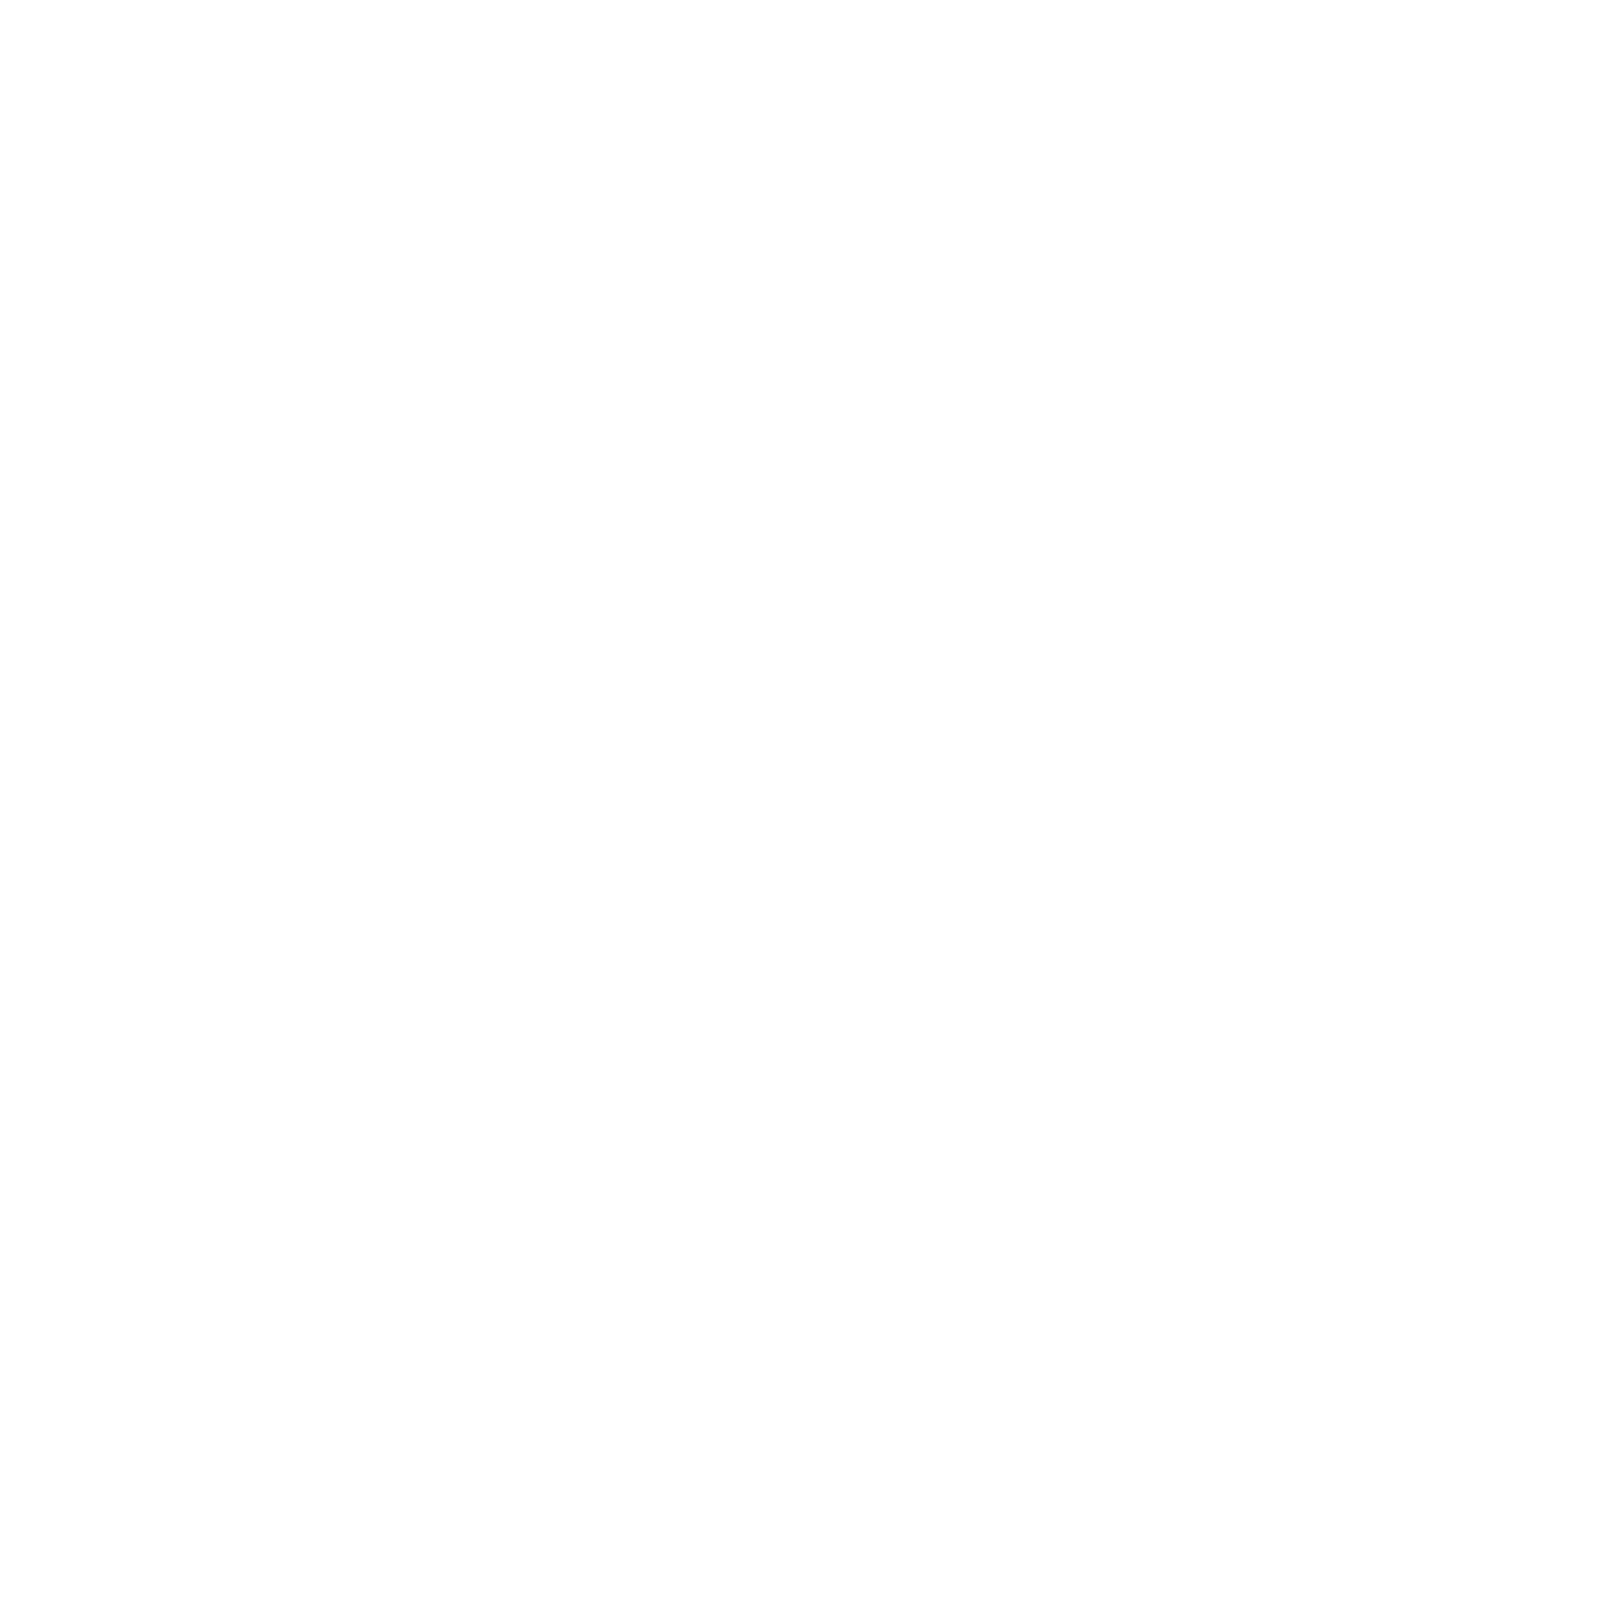 Cwi